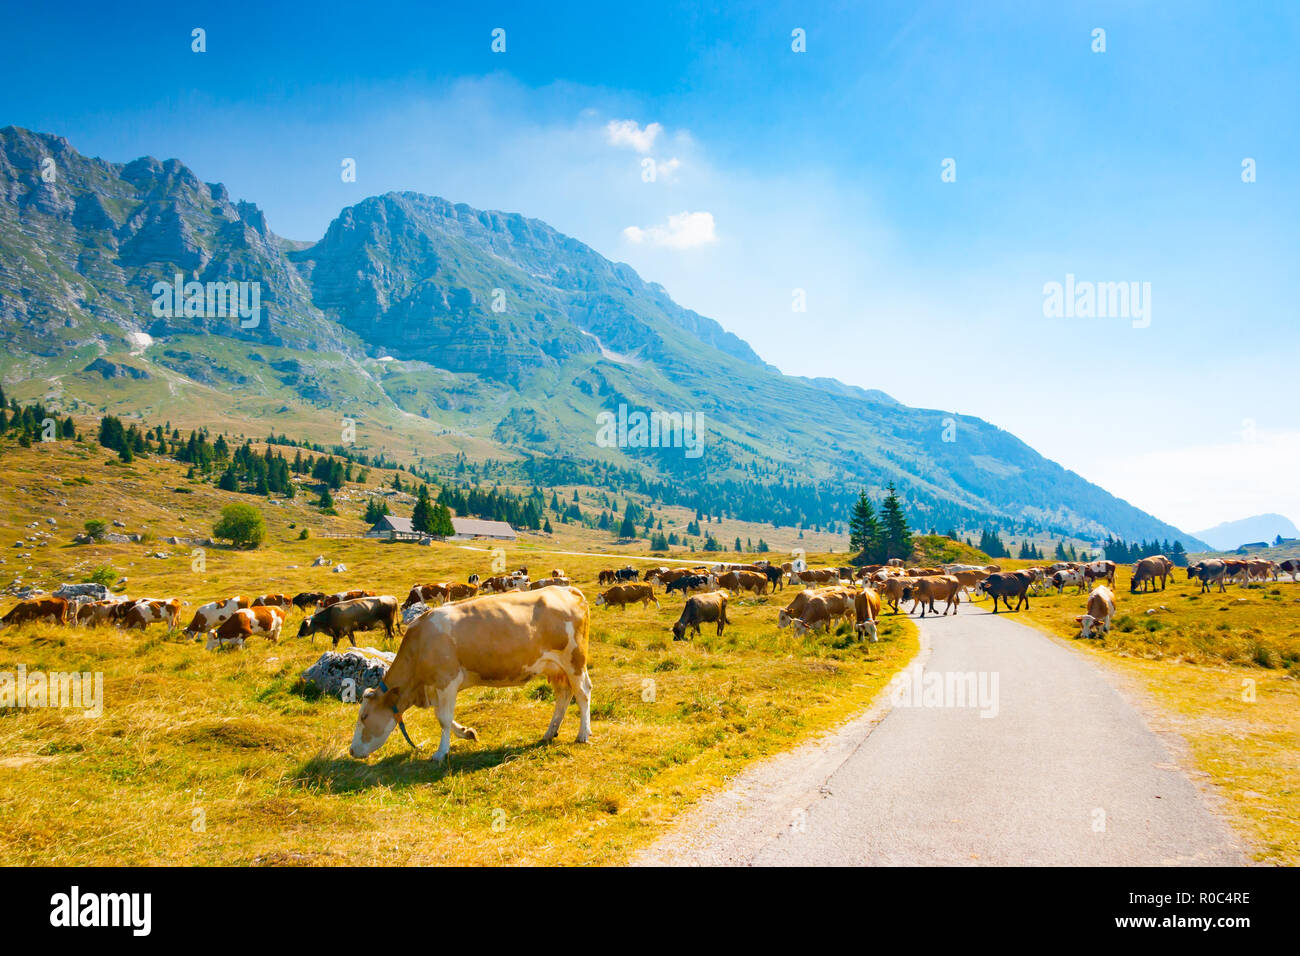 Vaches qui paissent dans les pâturages le long de la route de Montasio Plateau dans les Alpes Juliennes au cours de l'été, Sella Nevea, Friuli, Italie Banque D'Images